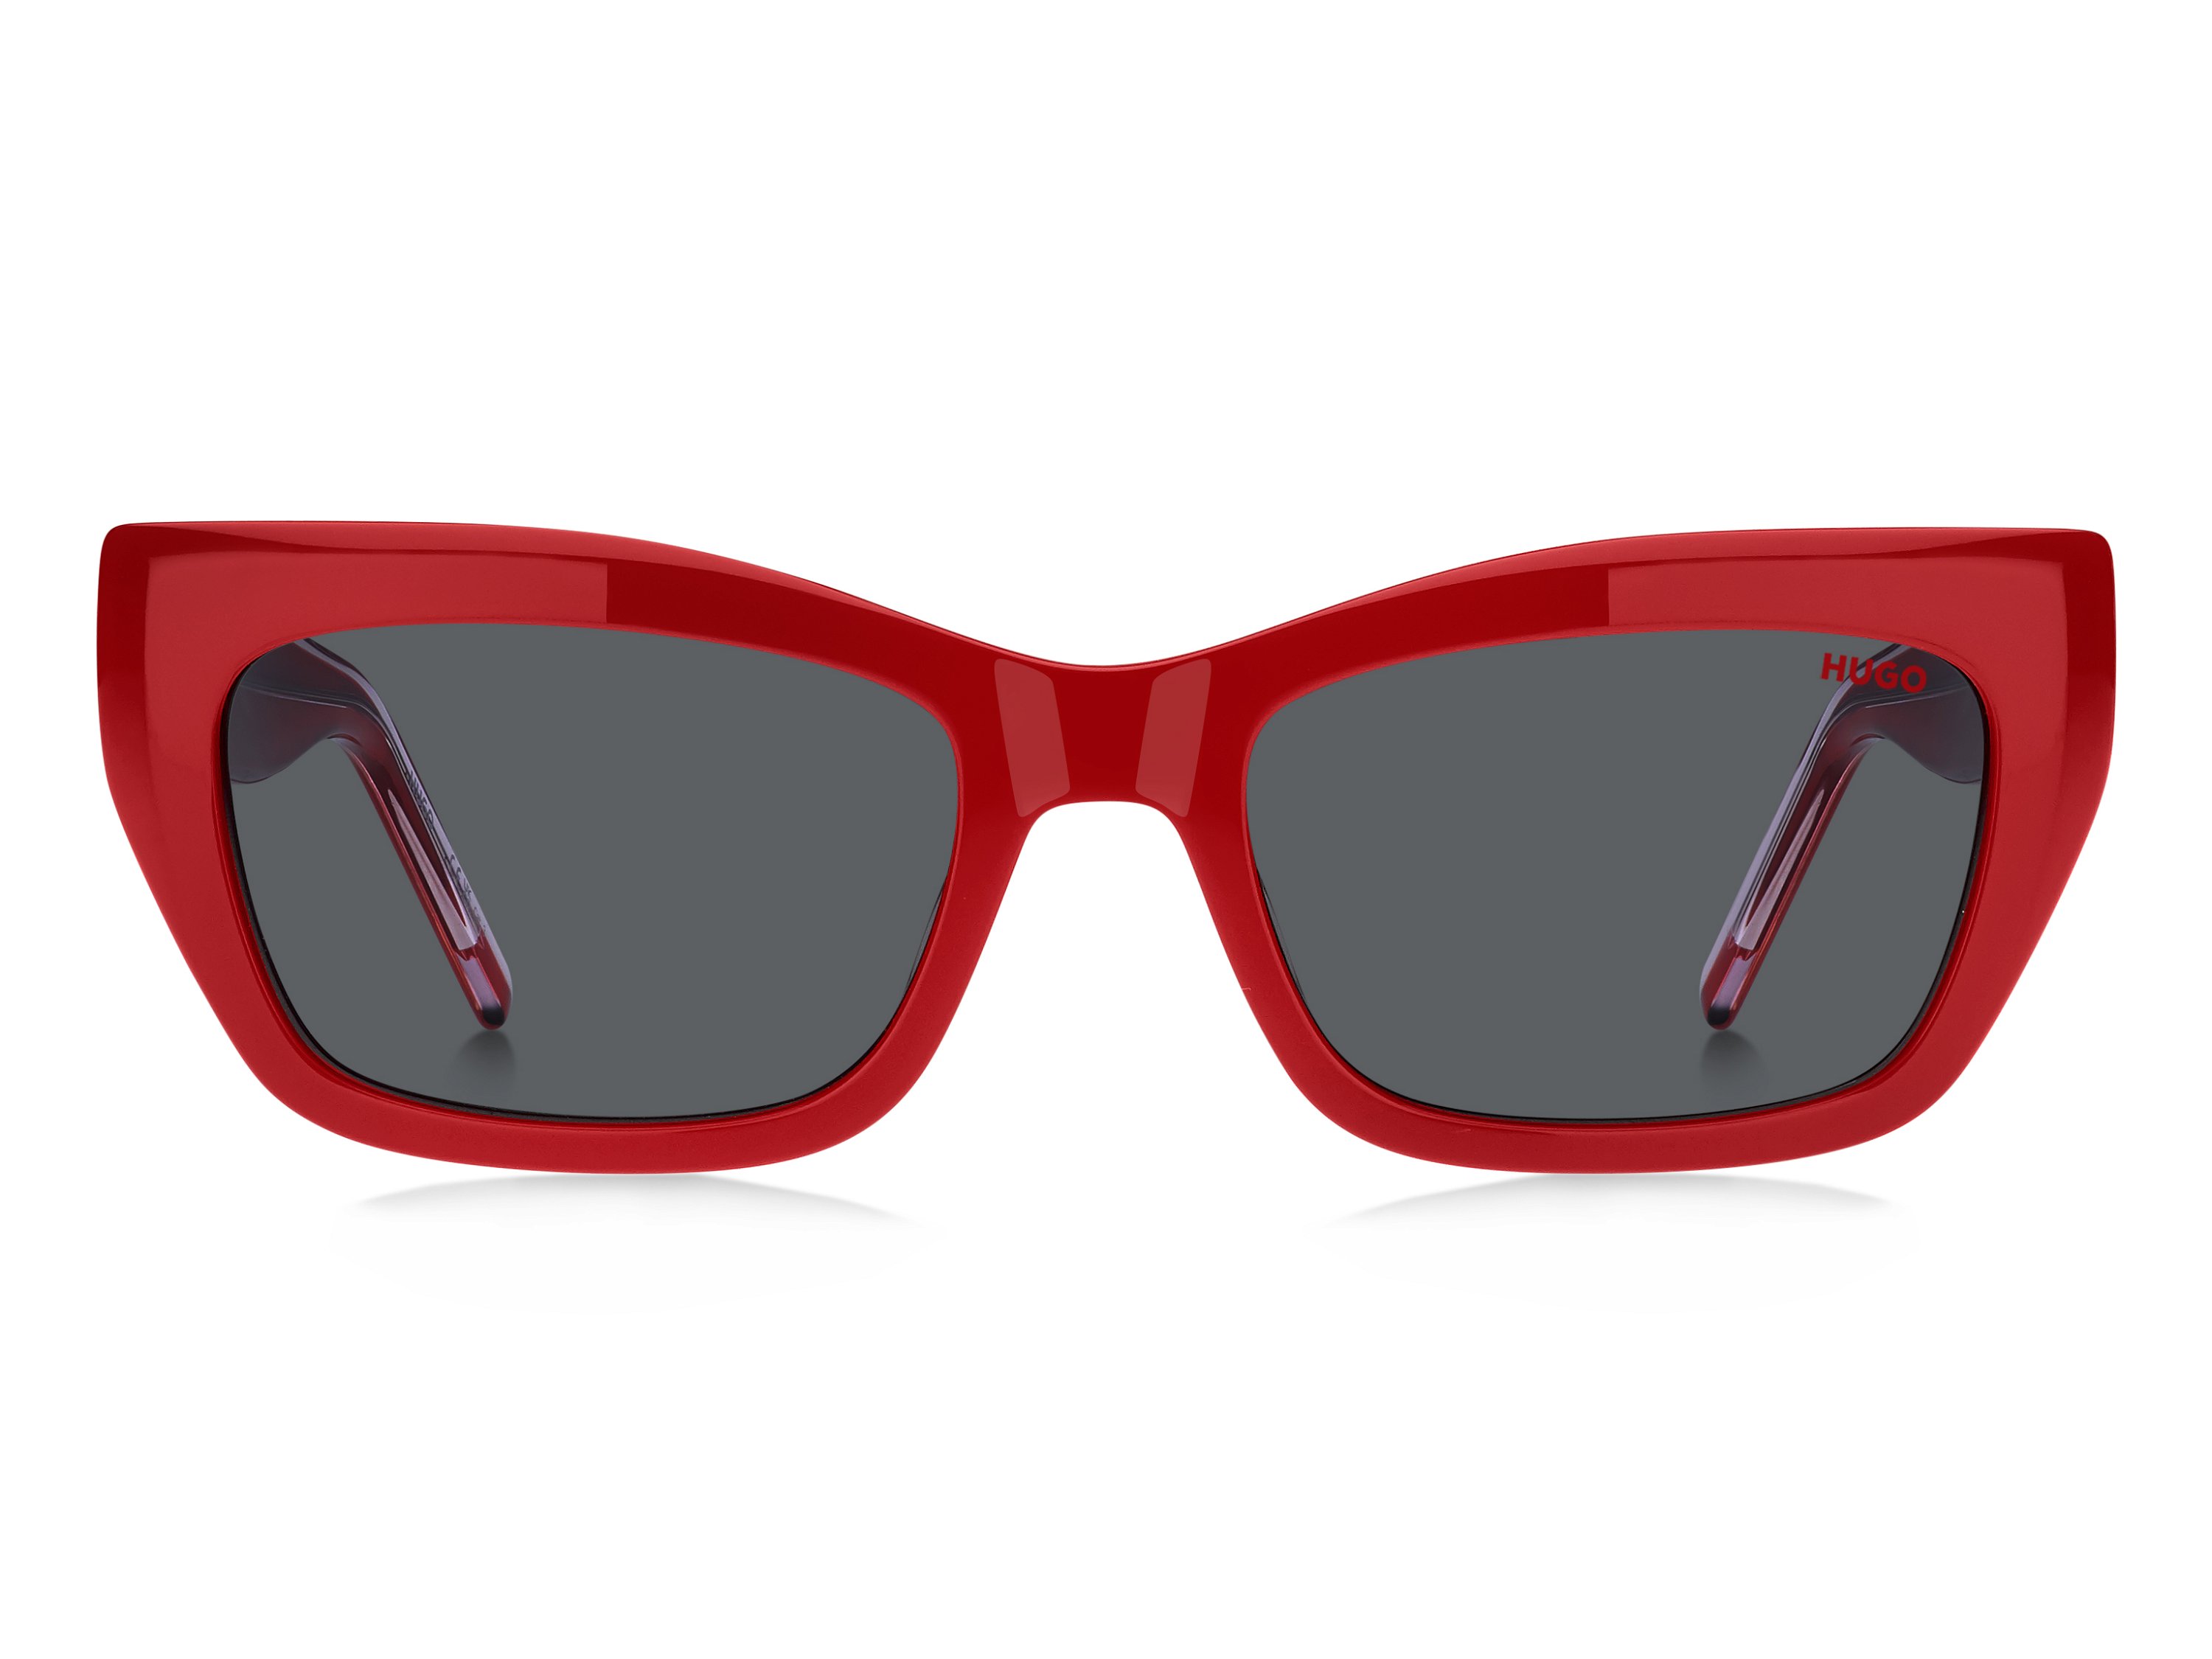 Das Bild zeigt die Sonnenbrille HG1301/S 92Y von der Marke Hugo in rot.